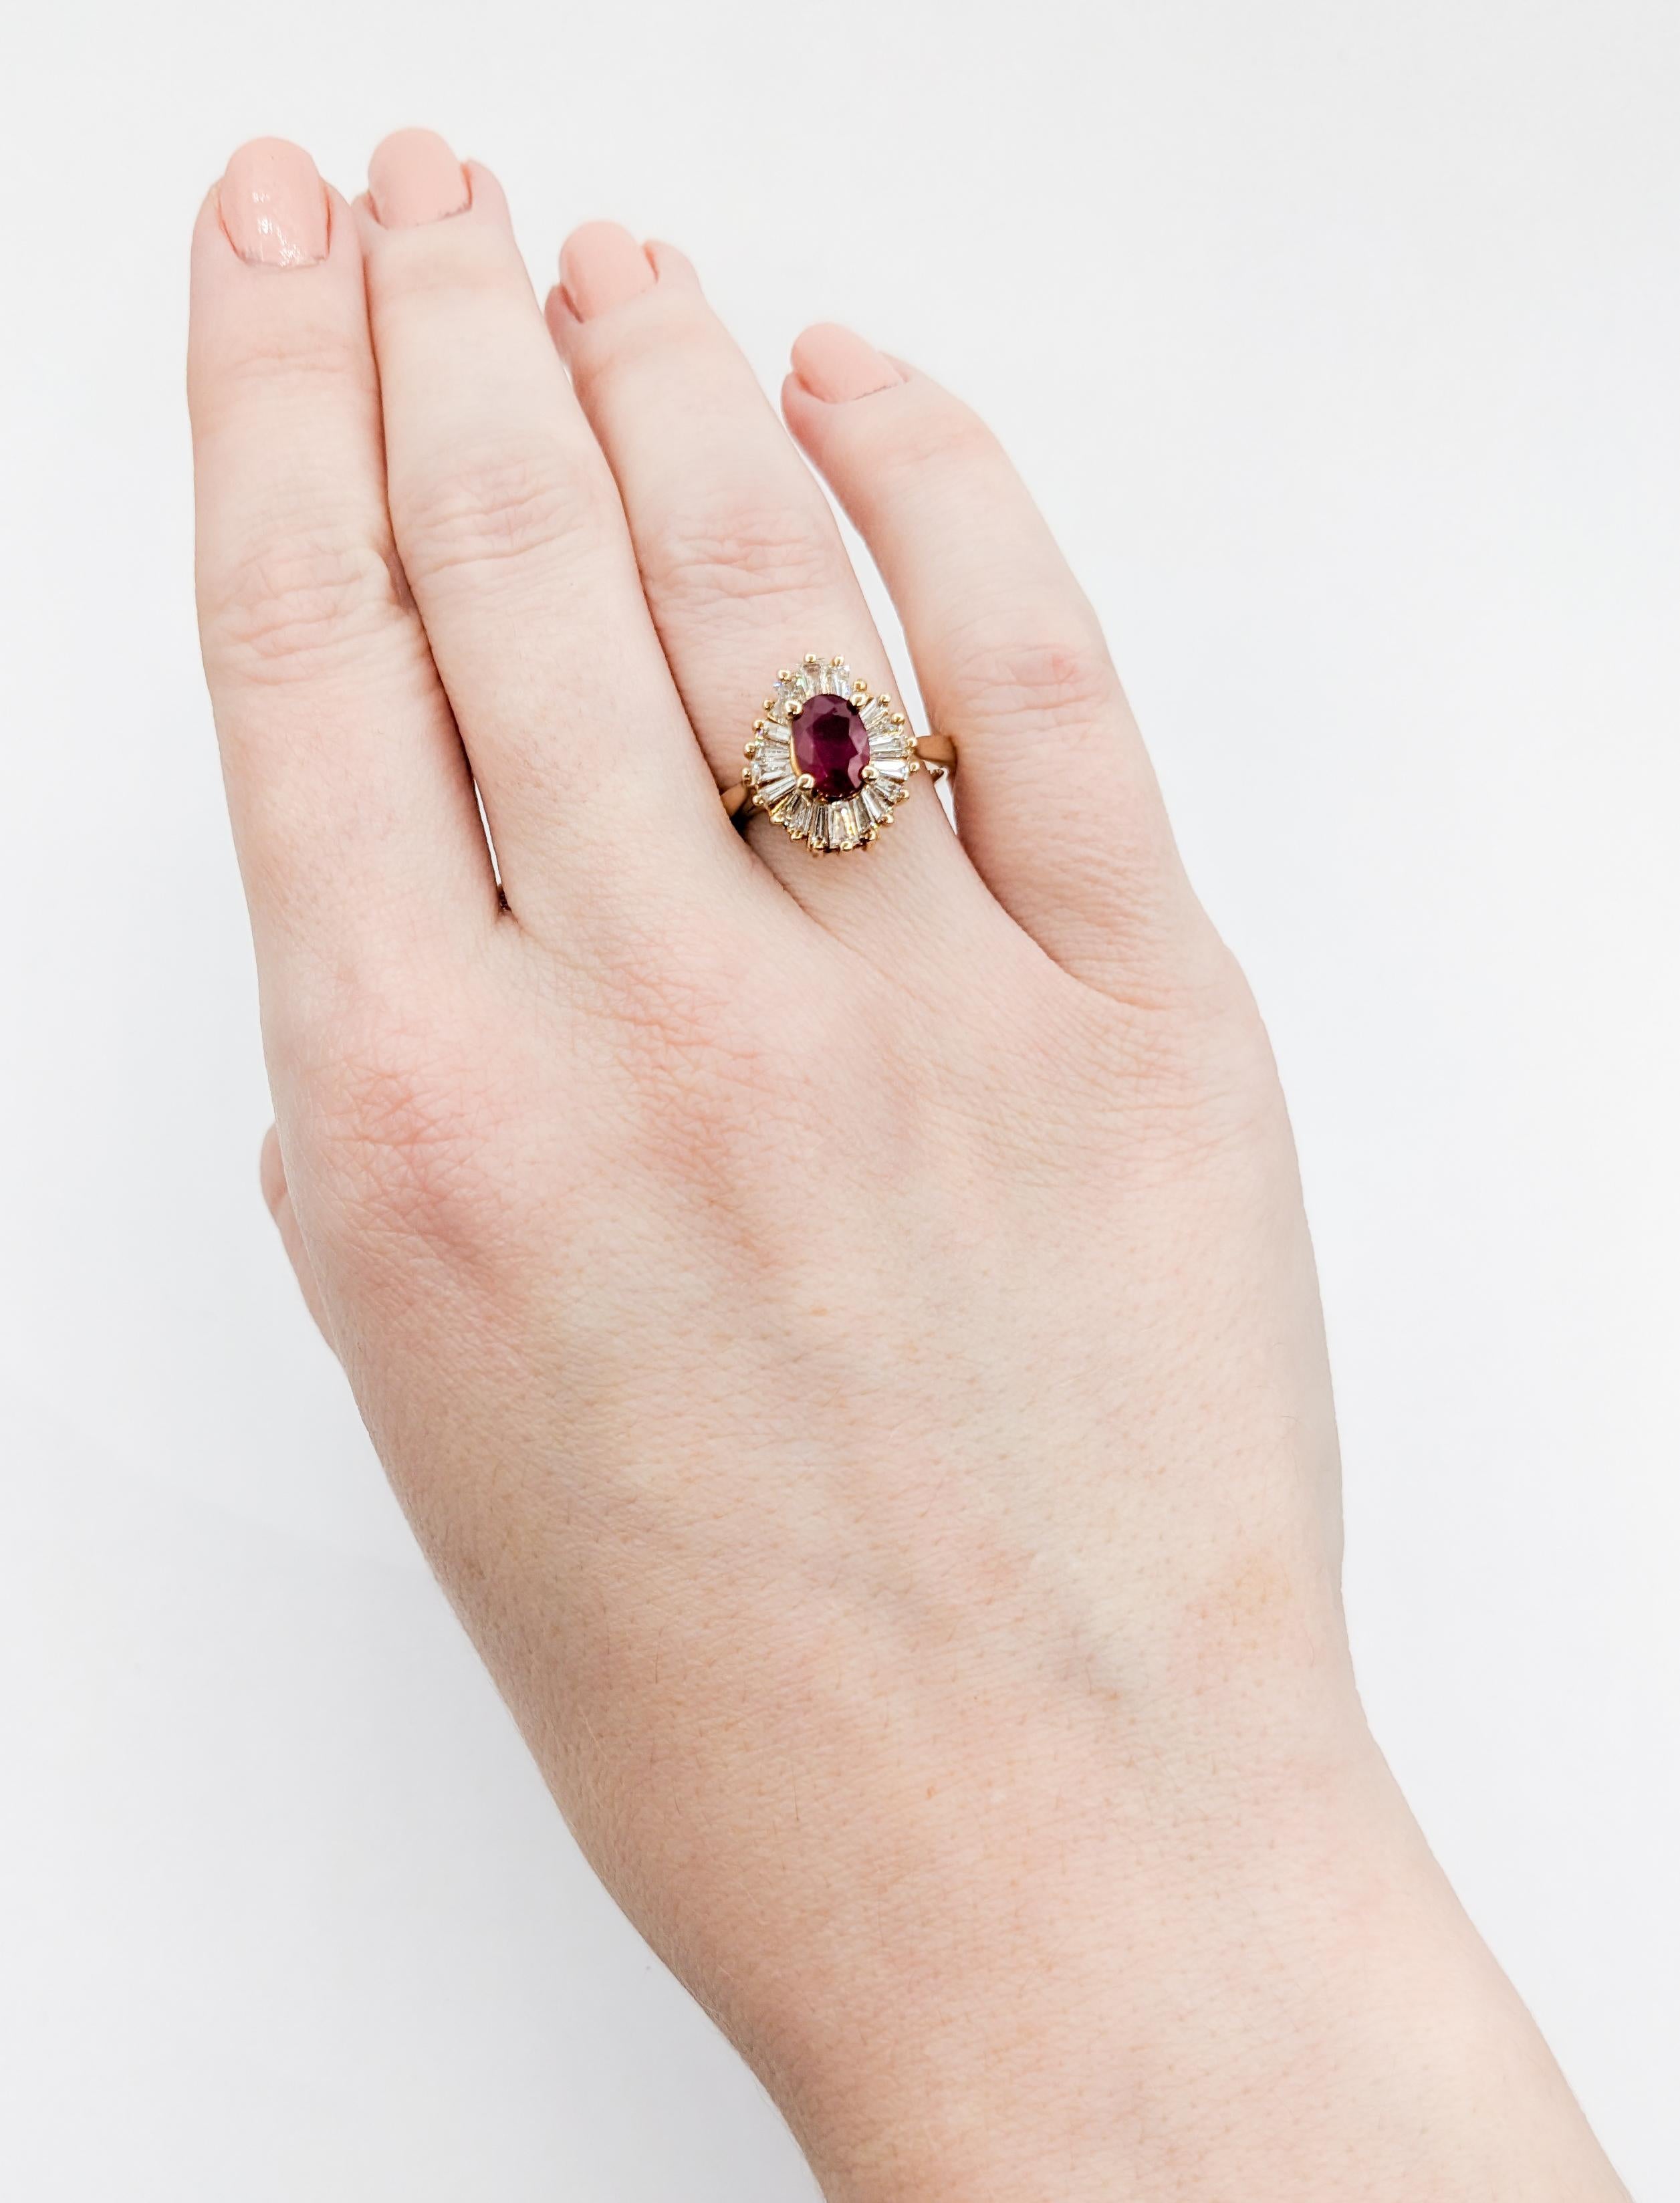 Crimson Ruby & Baguette Diamond Ballerina Ring For Sale 1